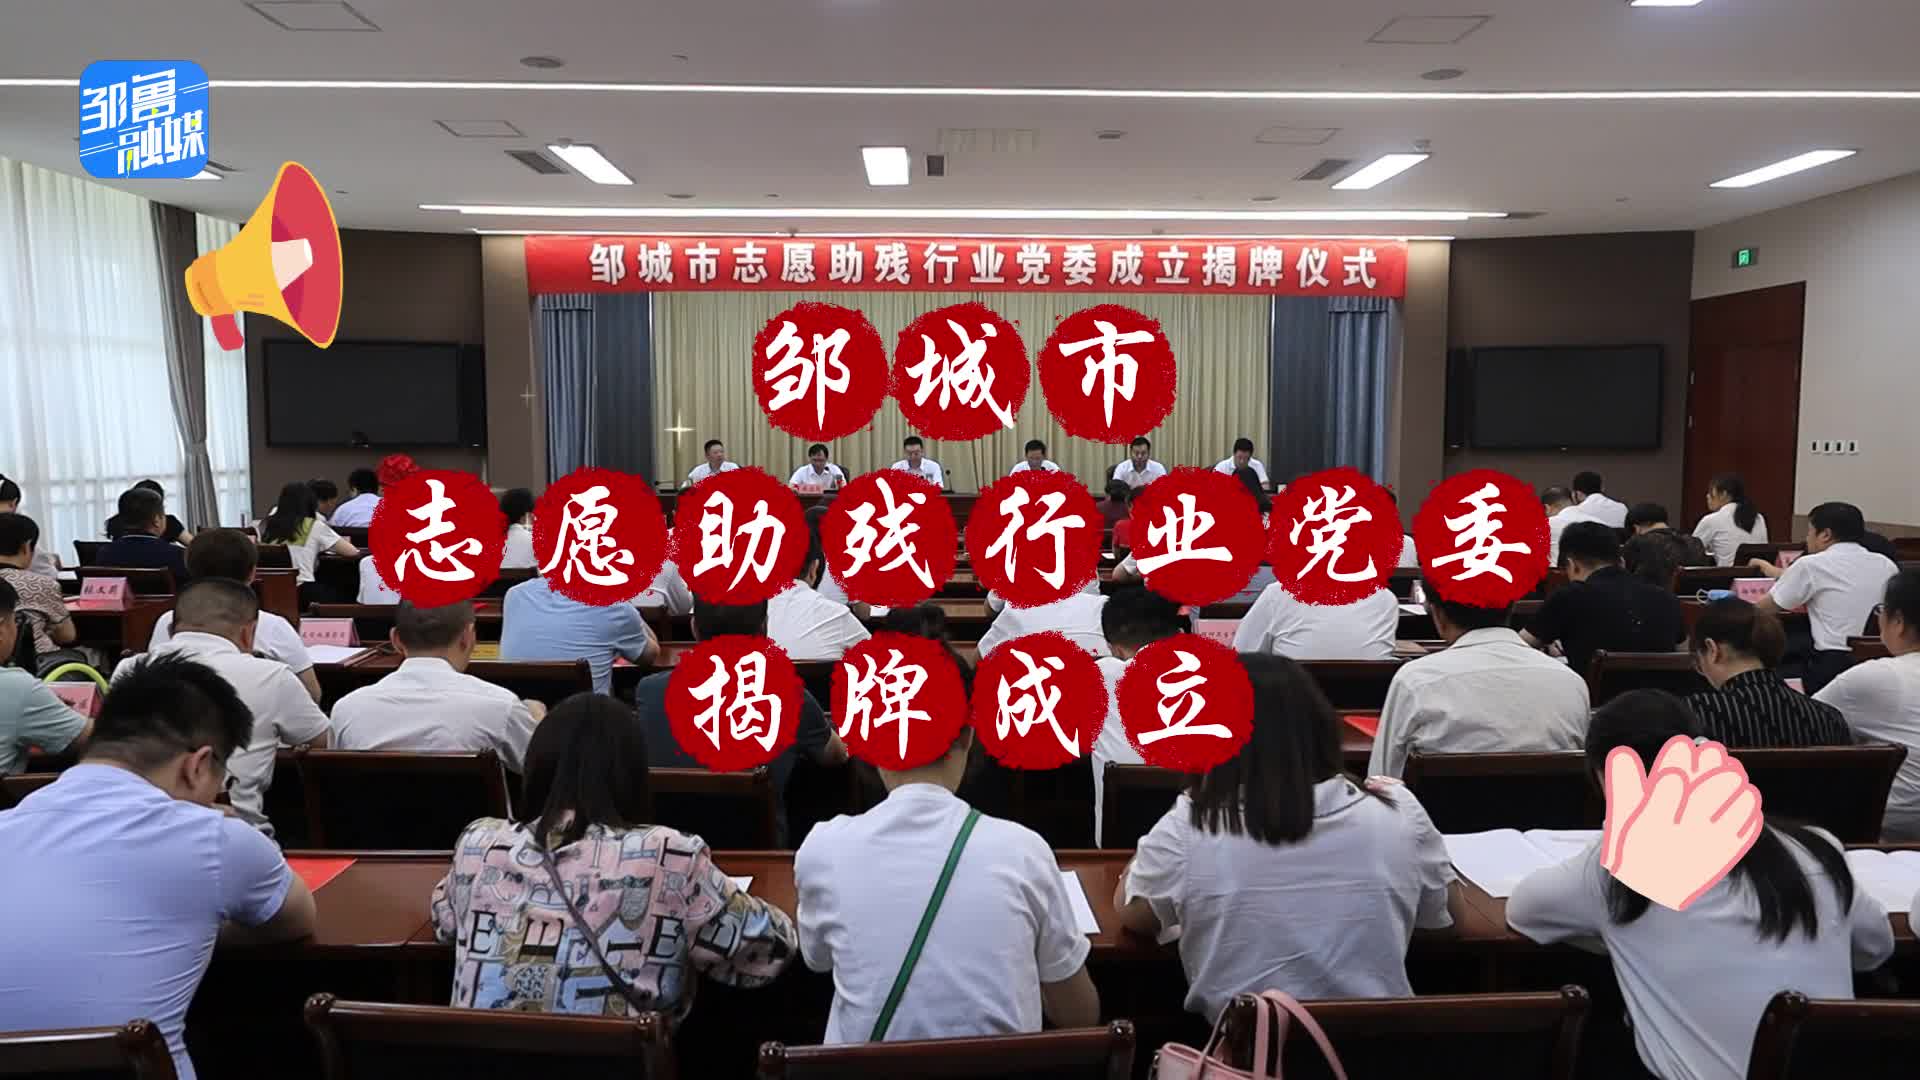 【邹视频·新闻】27秒|邹城市志愿助残行业党委揭牌成立